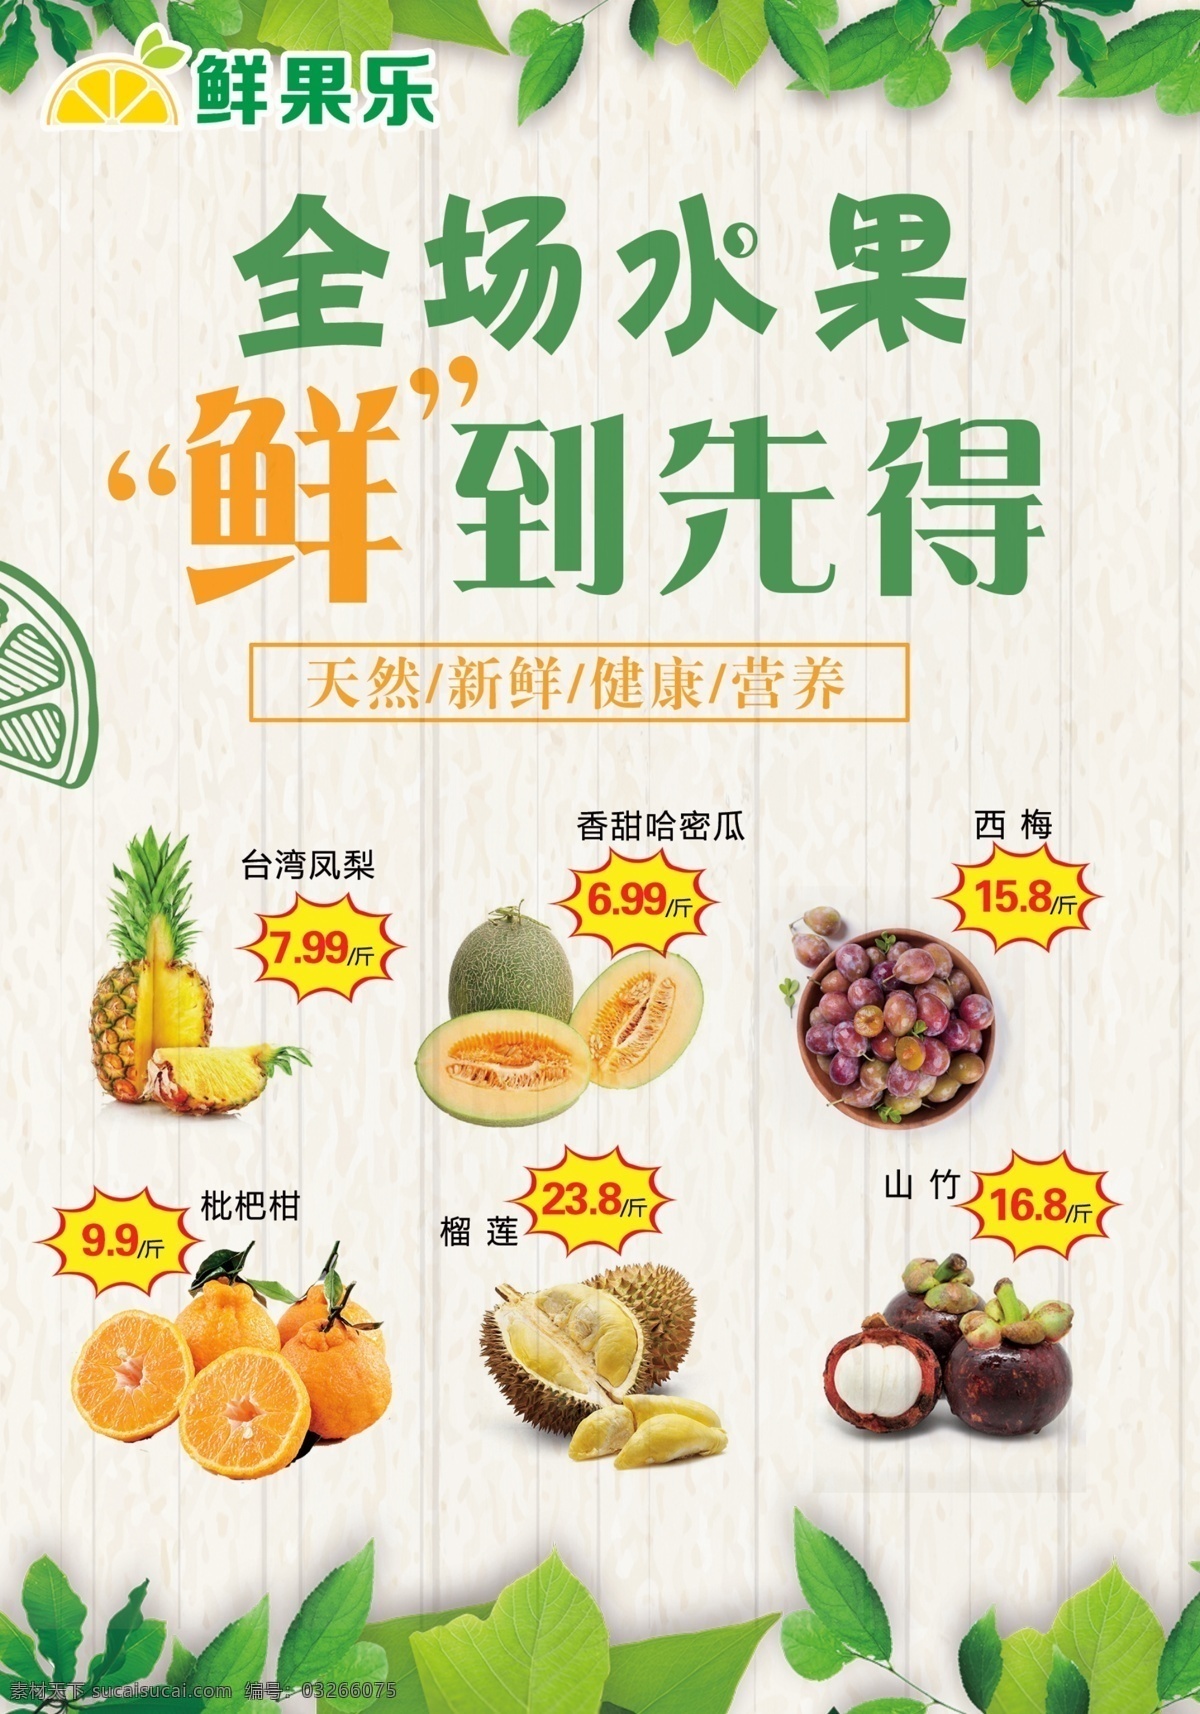 水果优惠海报 水果海报 优惠促销 水果促销 水果宣传单张 特价水果